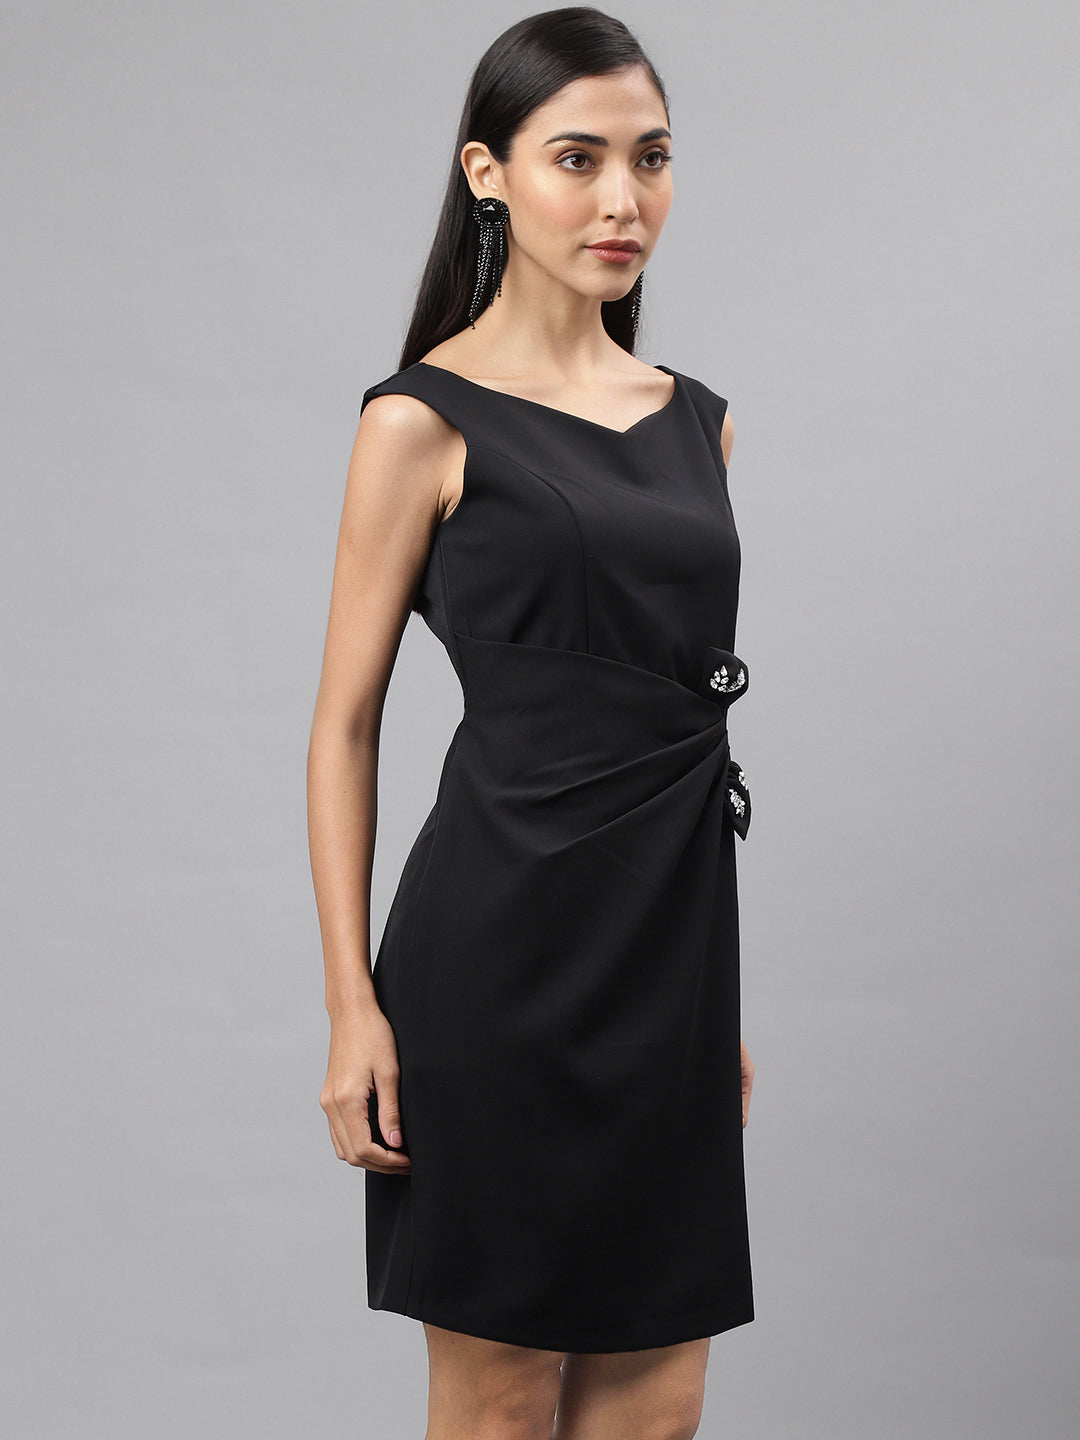 Black Cap Sleeve V-Neck Solid Shift Dress